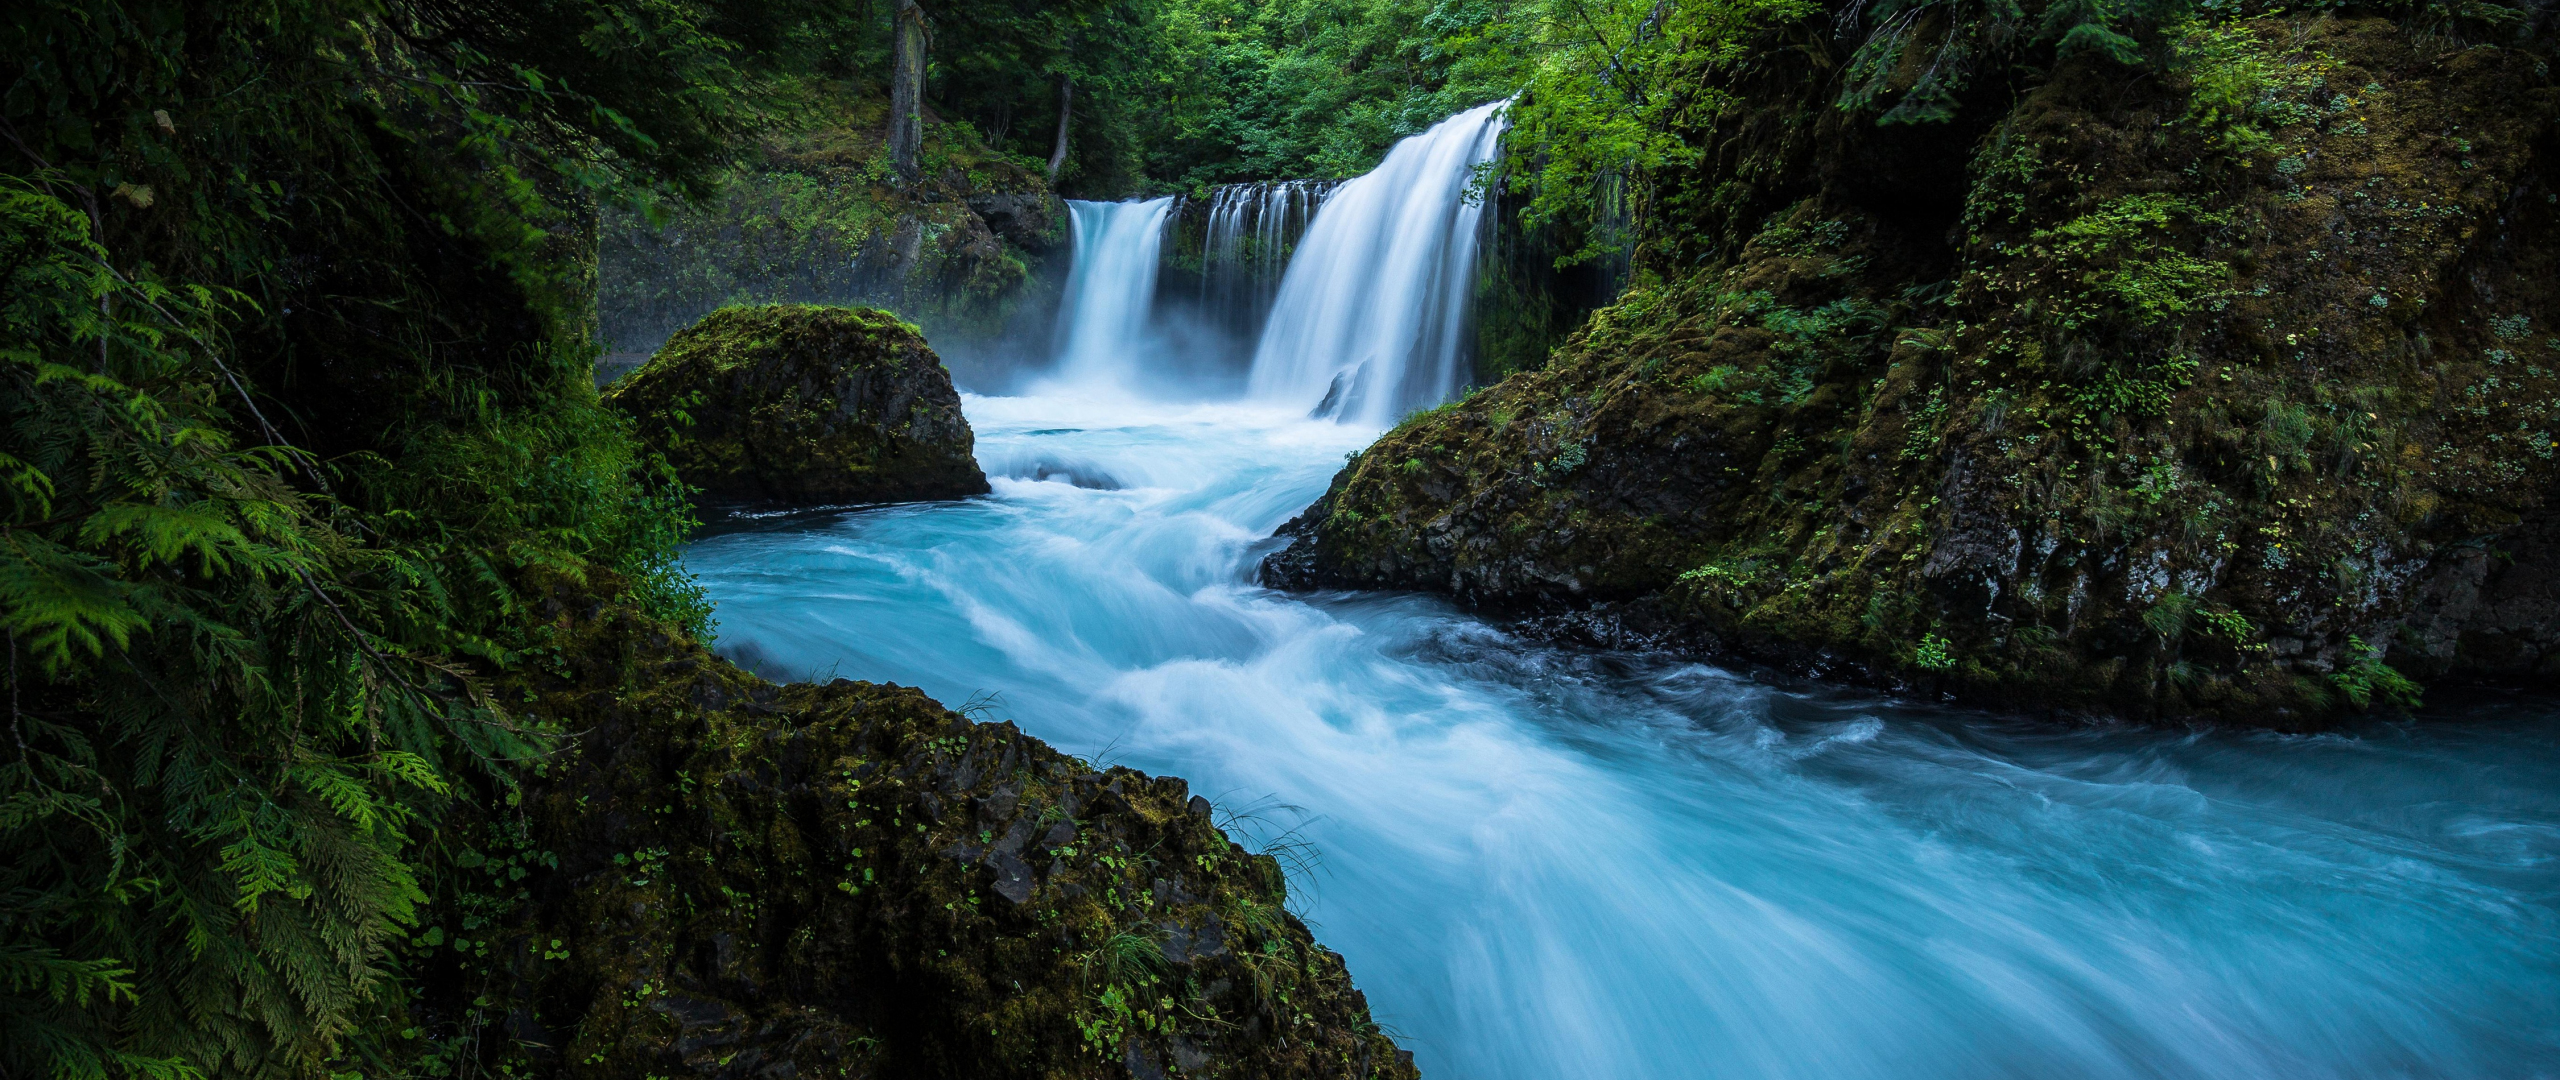 Видео на телефон природа. Красивые водопады. Река с водопадом. Живая природа водопады. Обои водопад.